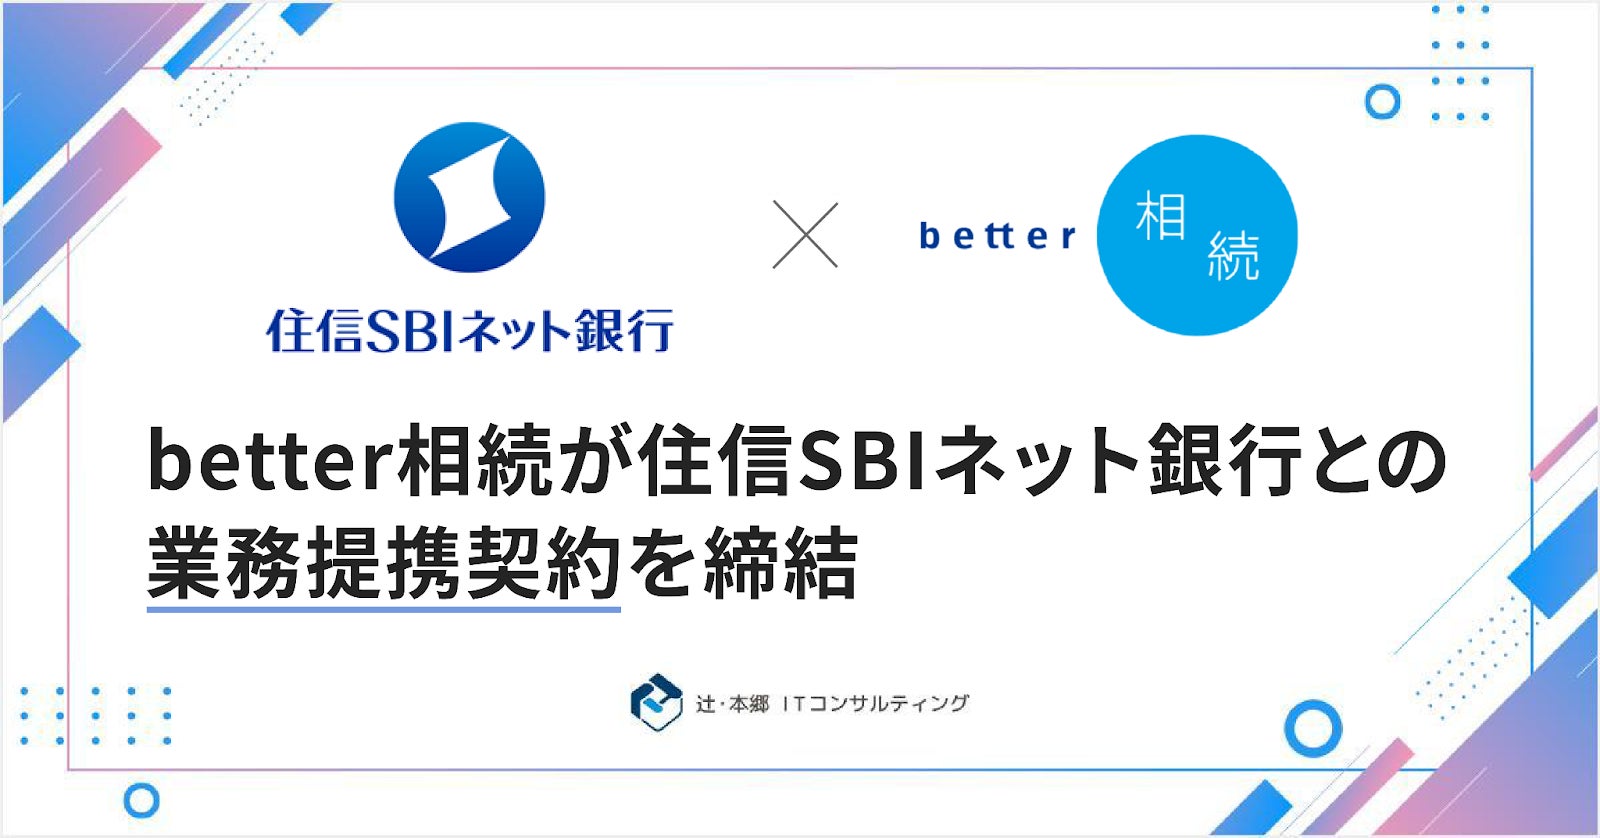 「better相続」を運営する辻・本郷 ITコンサルティング、住信SBIネット銀行と業務提携契約を締結